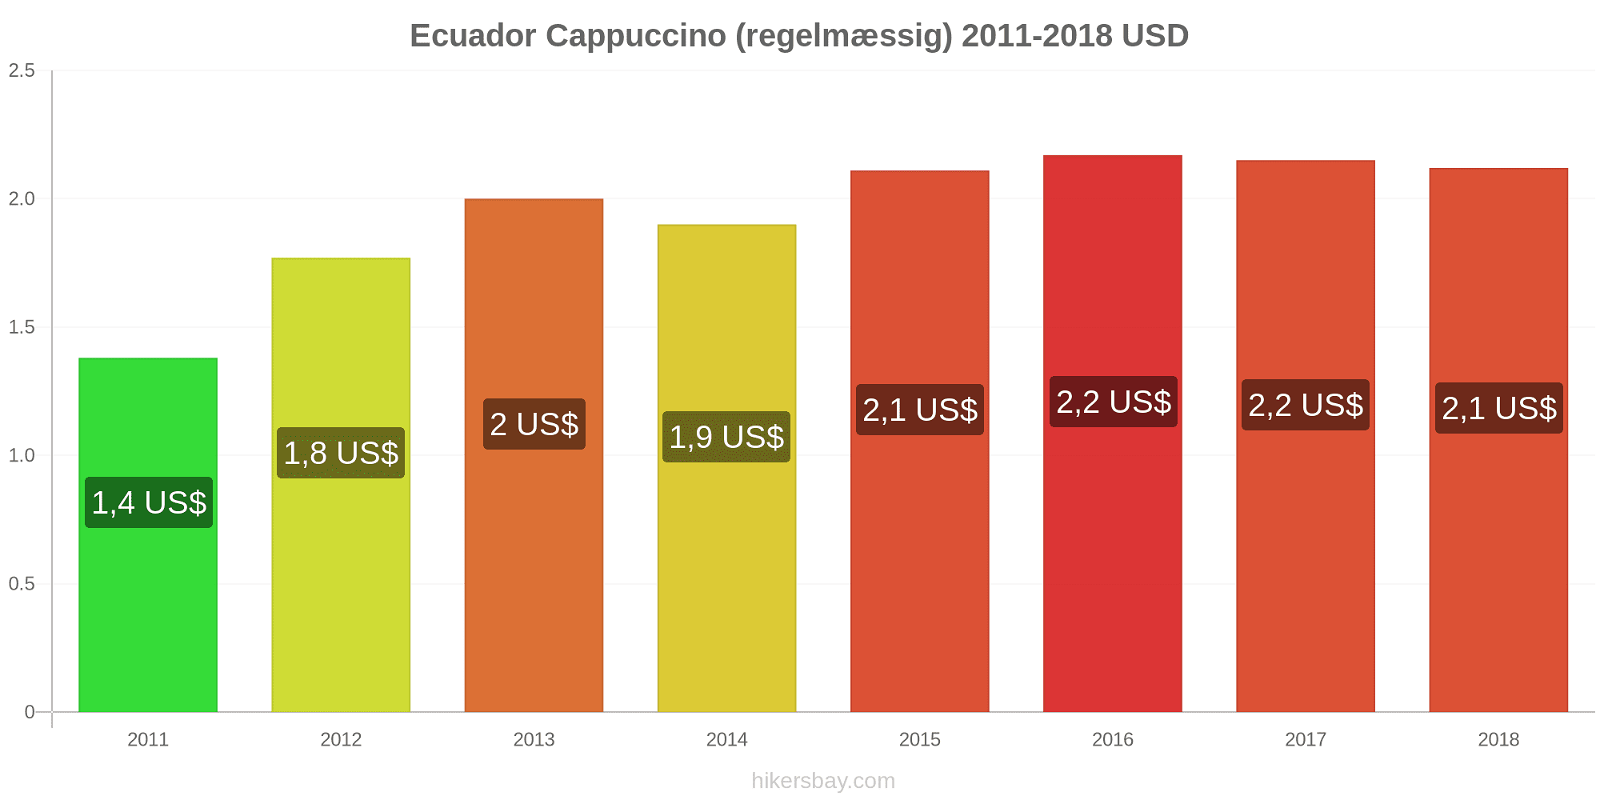 Ecuador prisændringer Cappuccino hikersbay.com